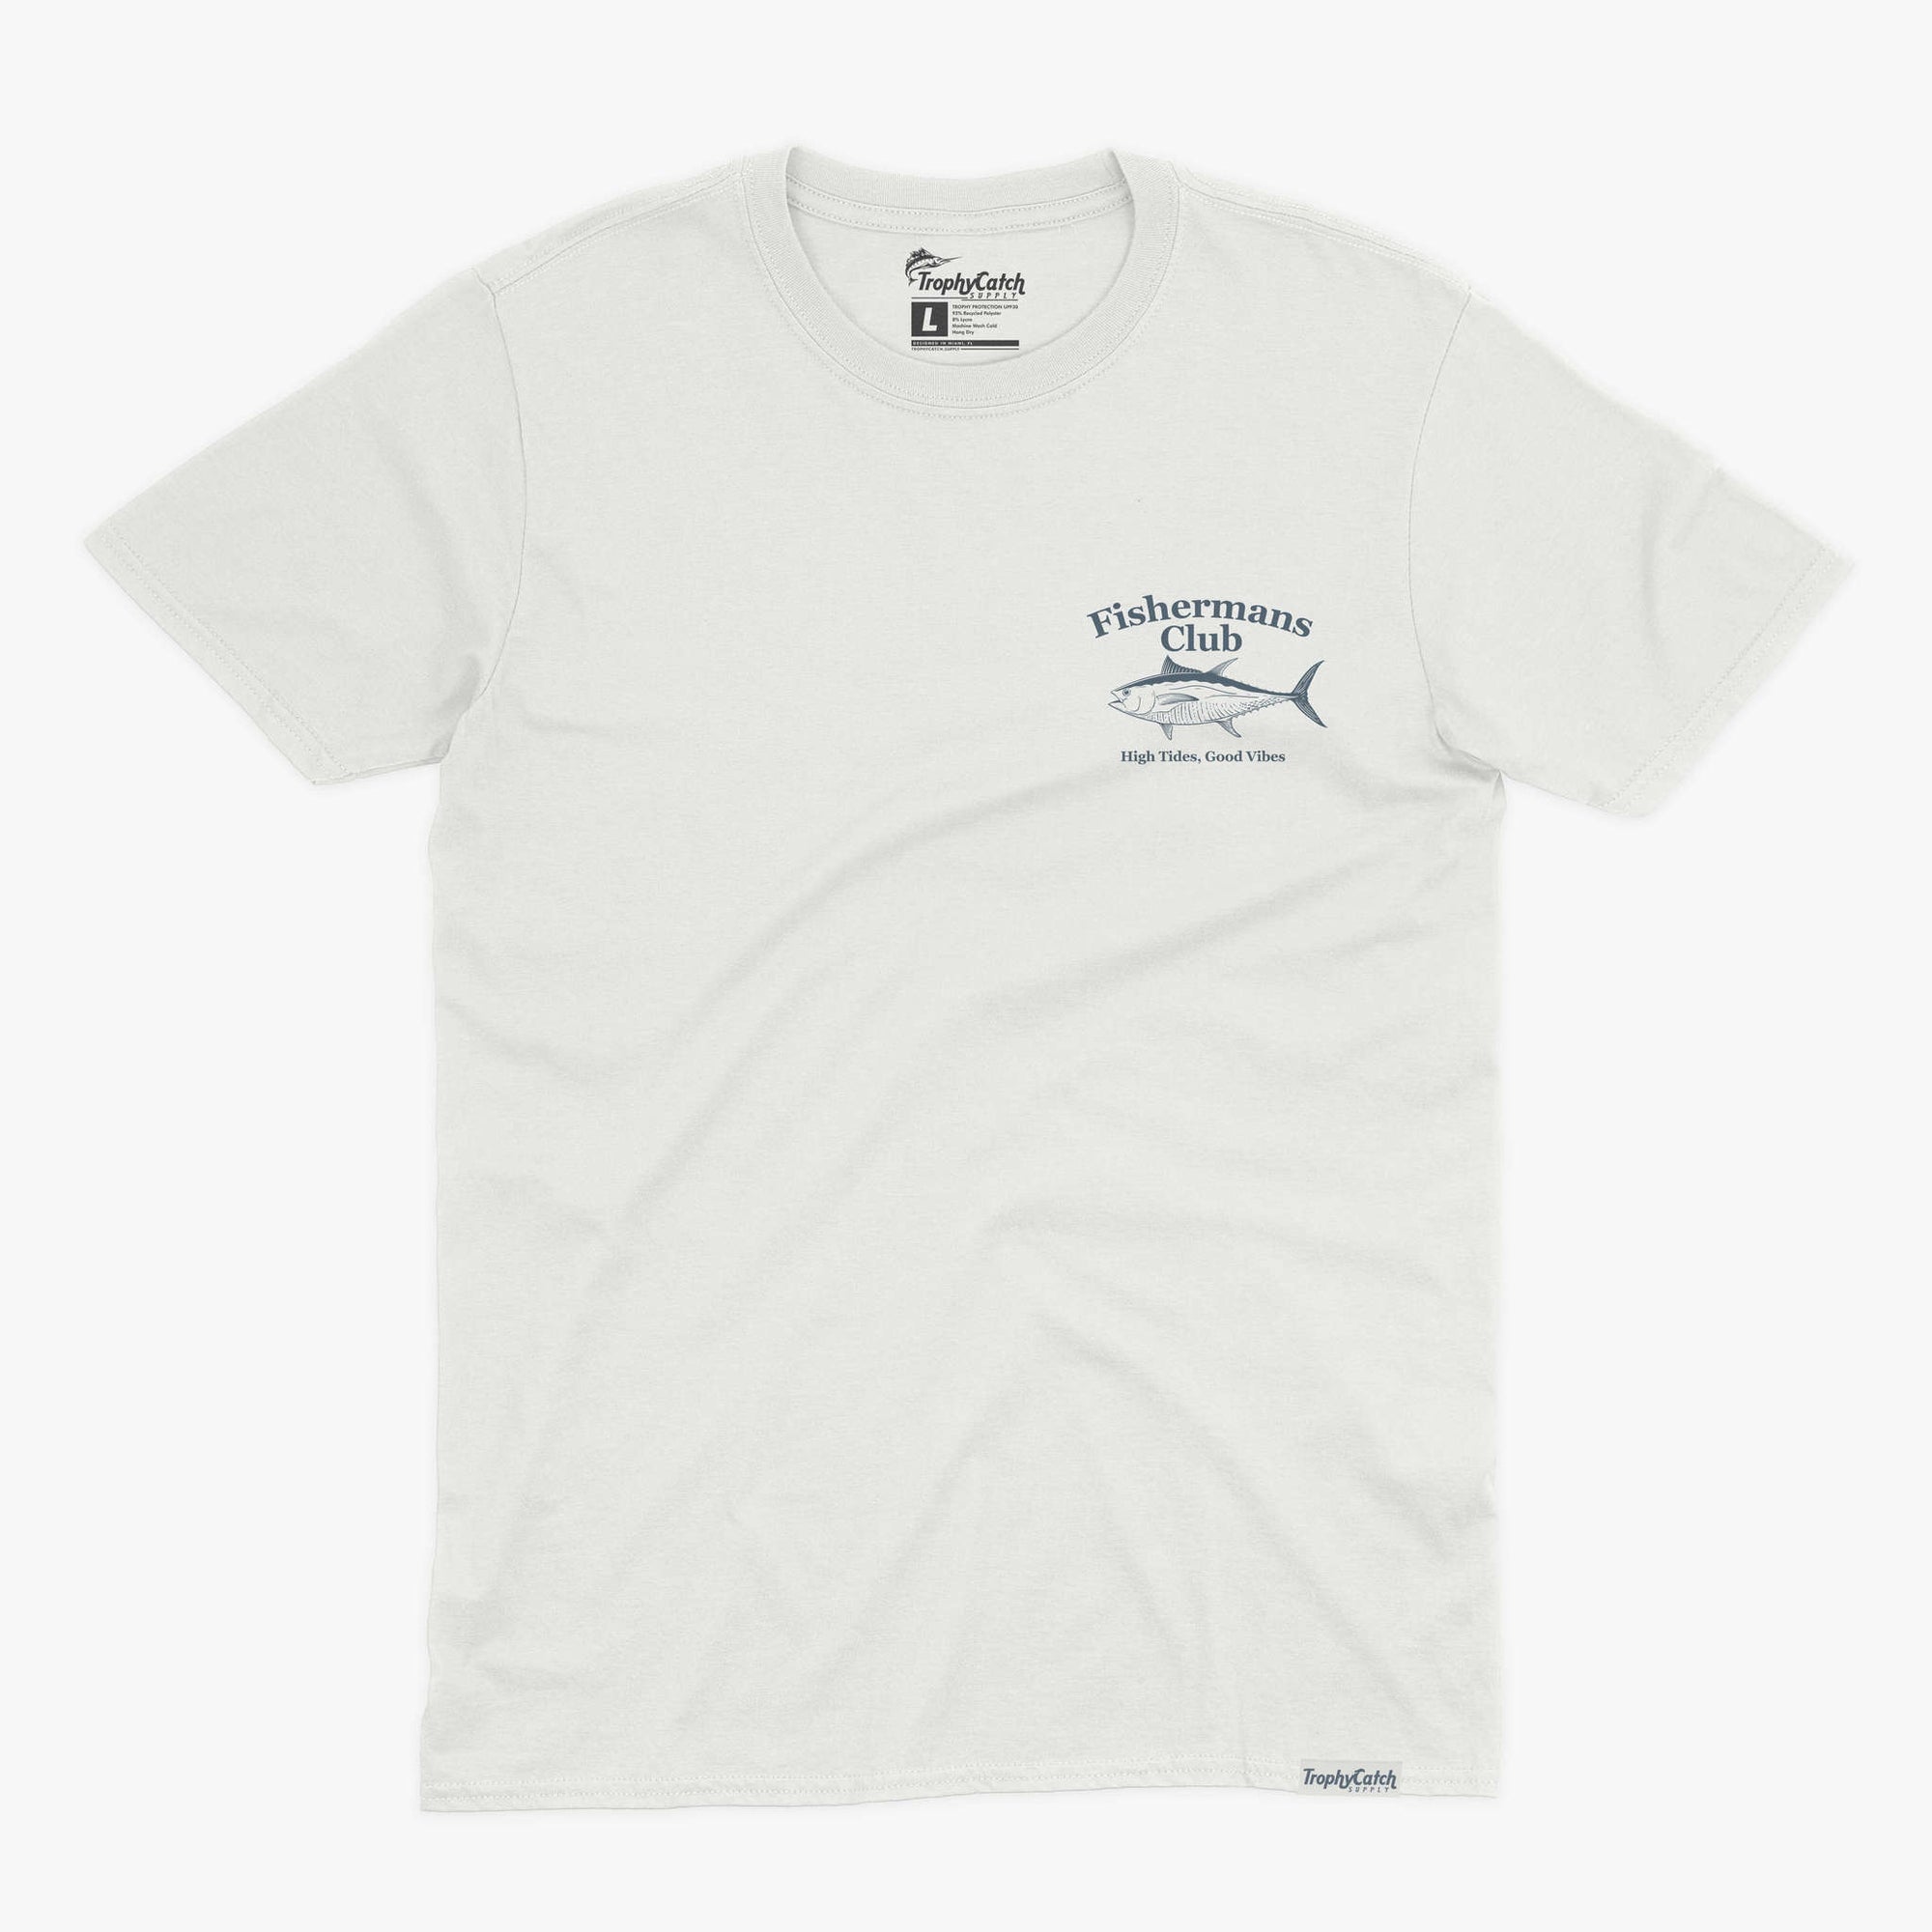 Fishing Shirt Funny Shirt Salt Water Fishing Tee Shirt